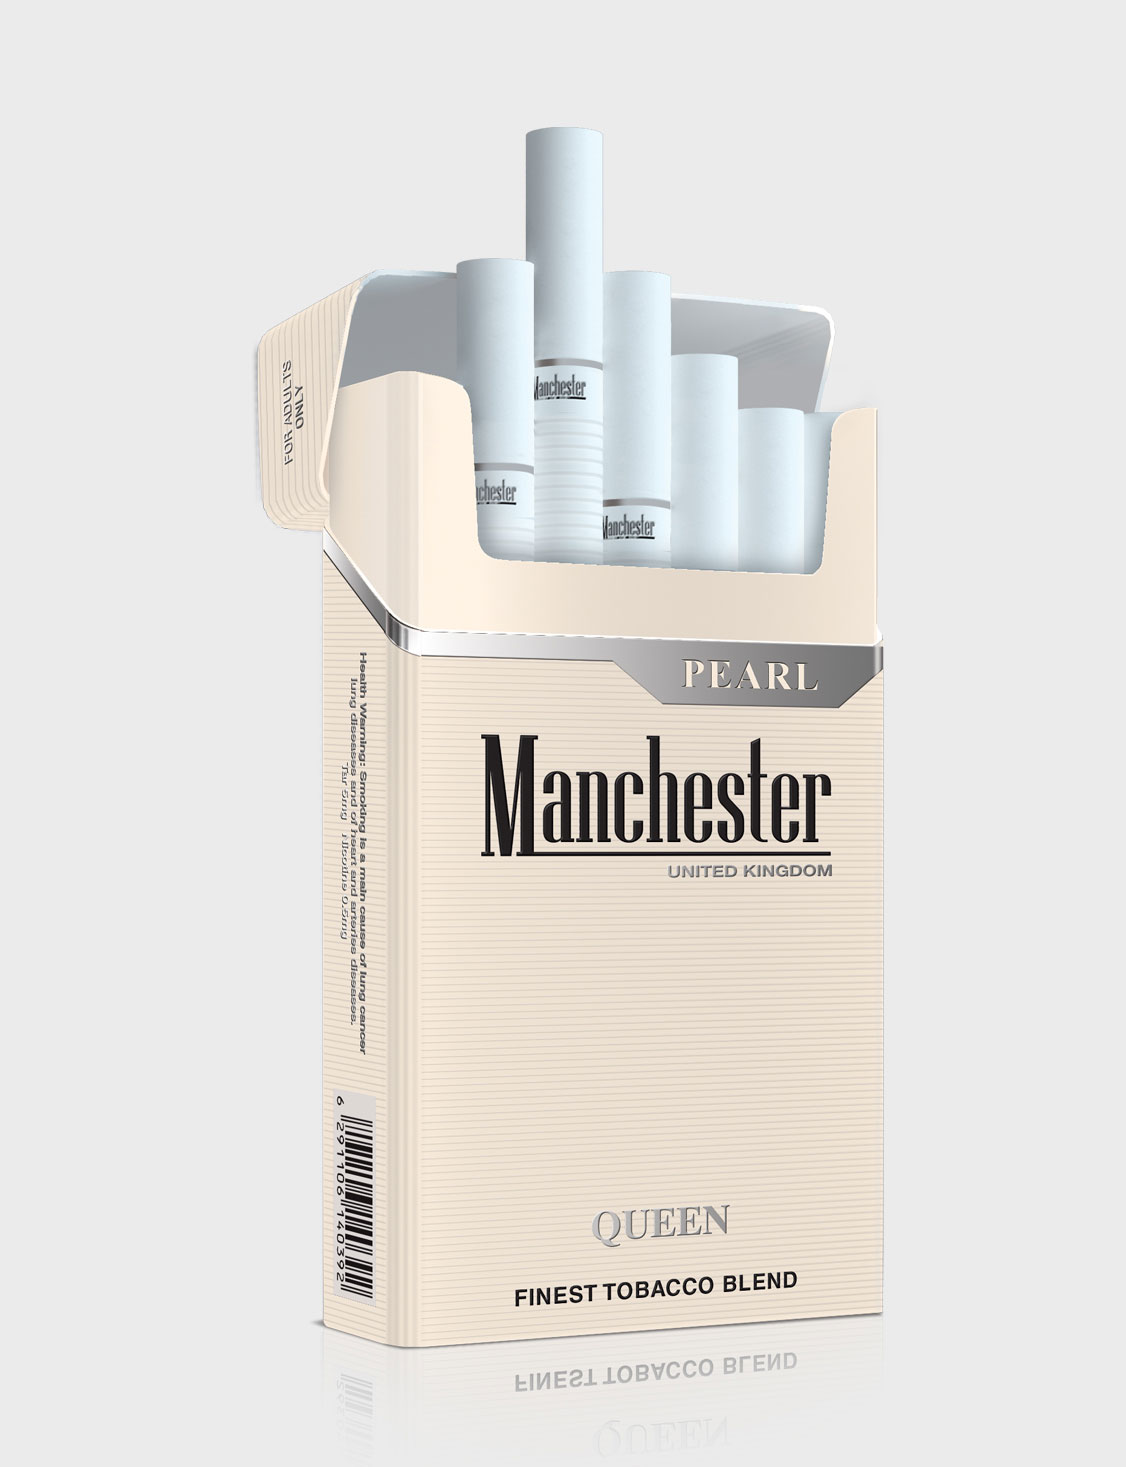 Манчестер компакт. Сигареты Manchester Queen Blue. Сигареты Манчестер Юнайтед кингдом. Сигареты Манчестер Блэк компакт. Манчестер нано Блэк сигареты.